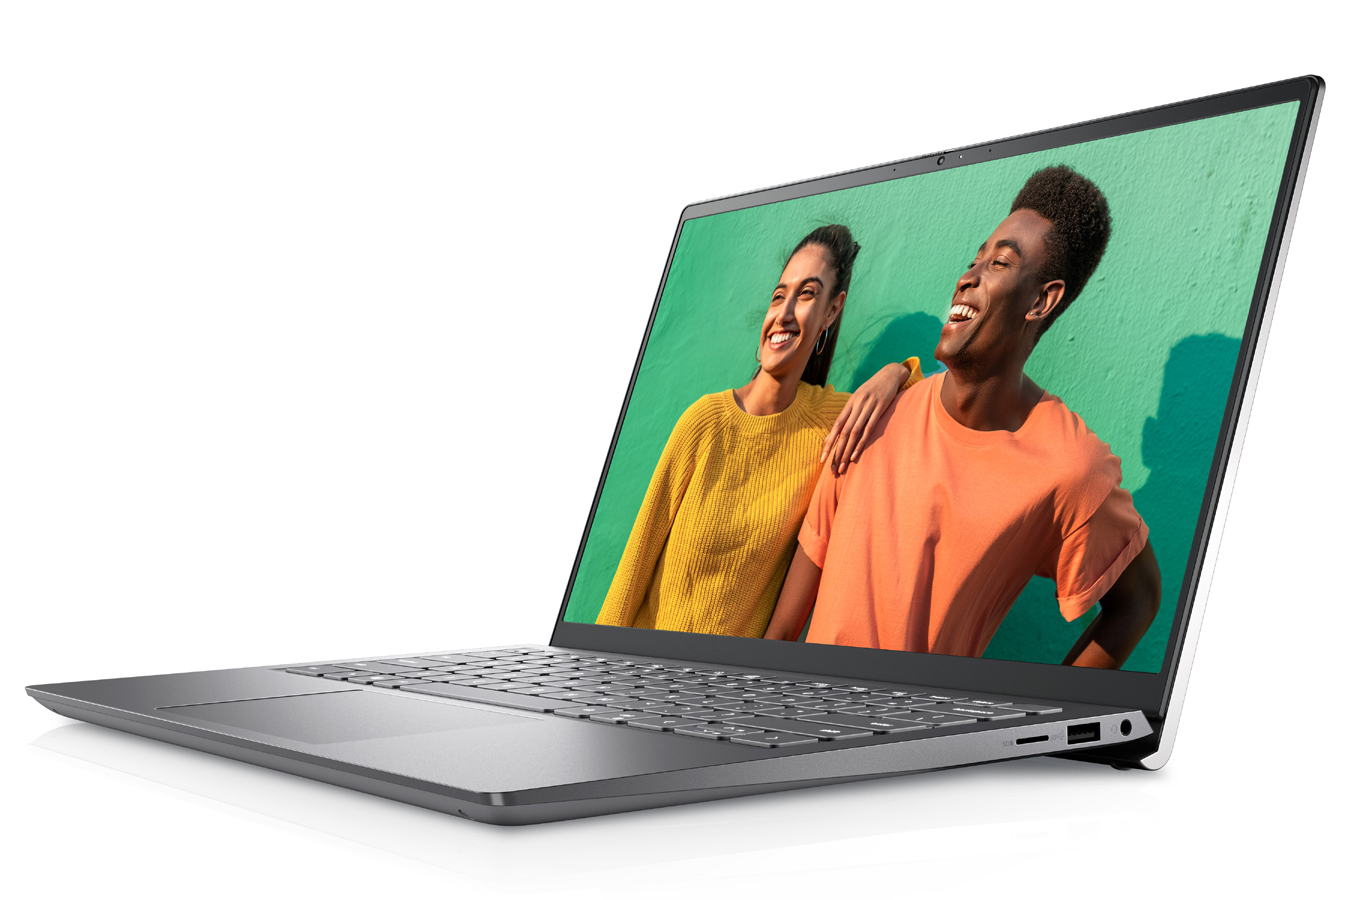 O laptop Dell Inspiron 14, aberto com a foto de dois amigos na tela.